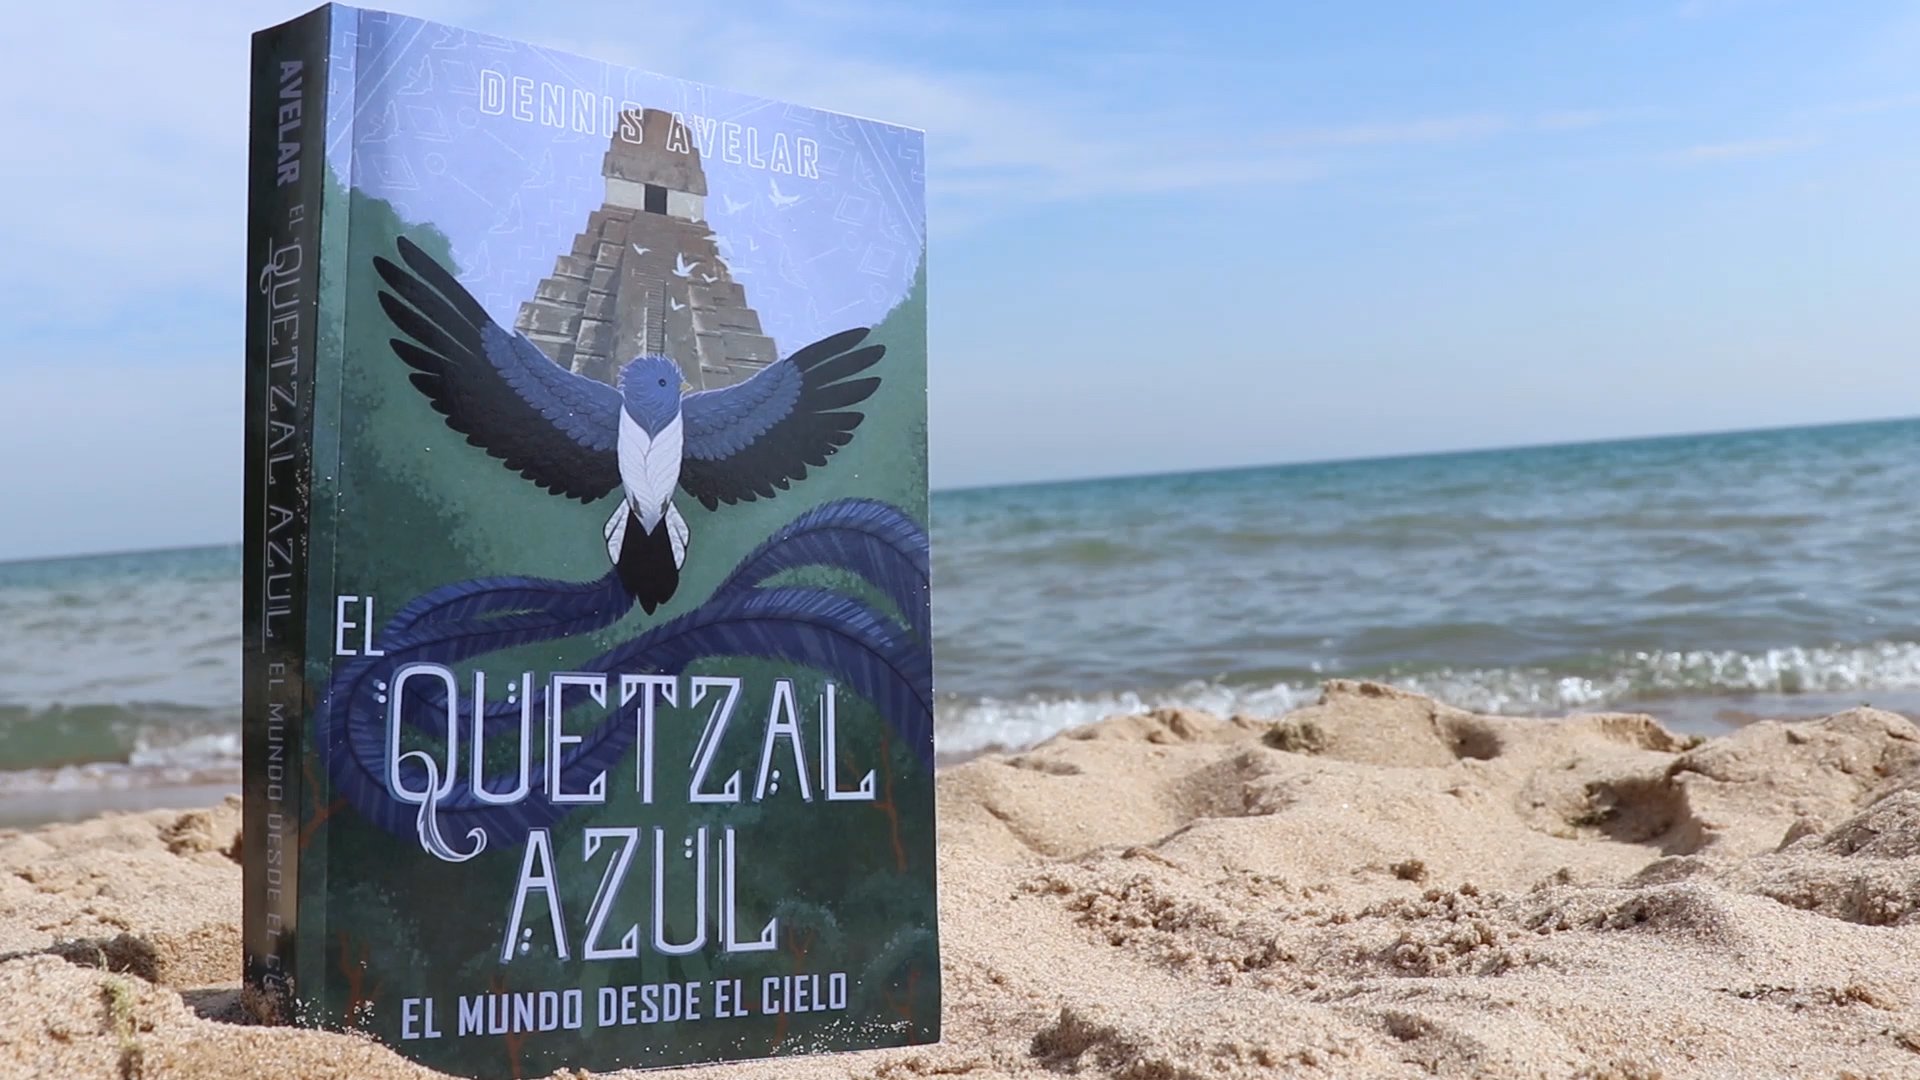 La Misión del Quetzal Azul